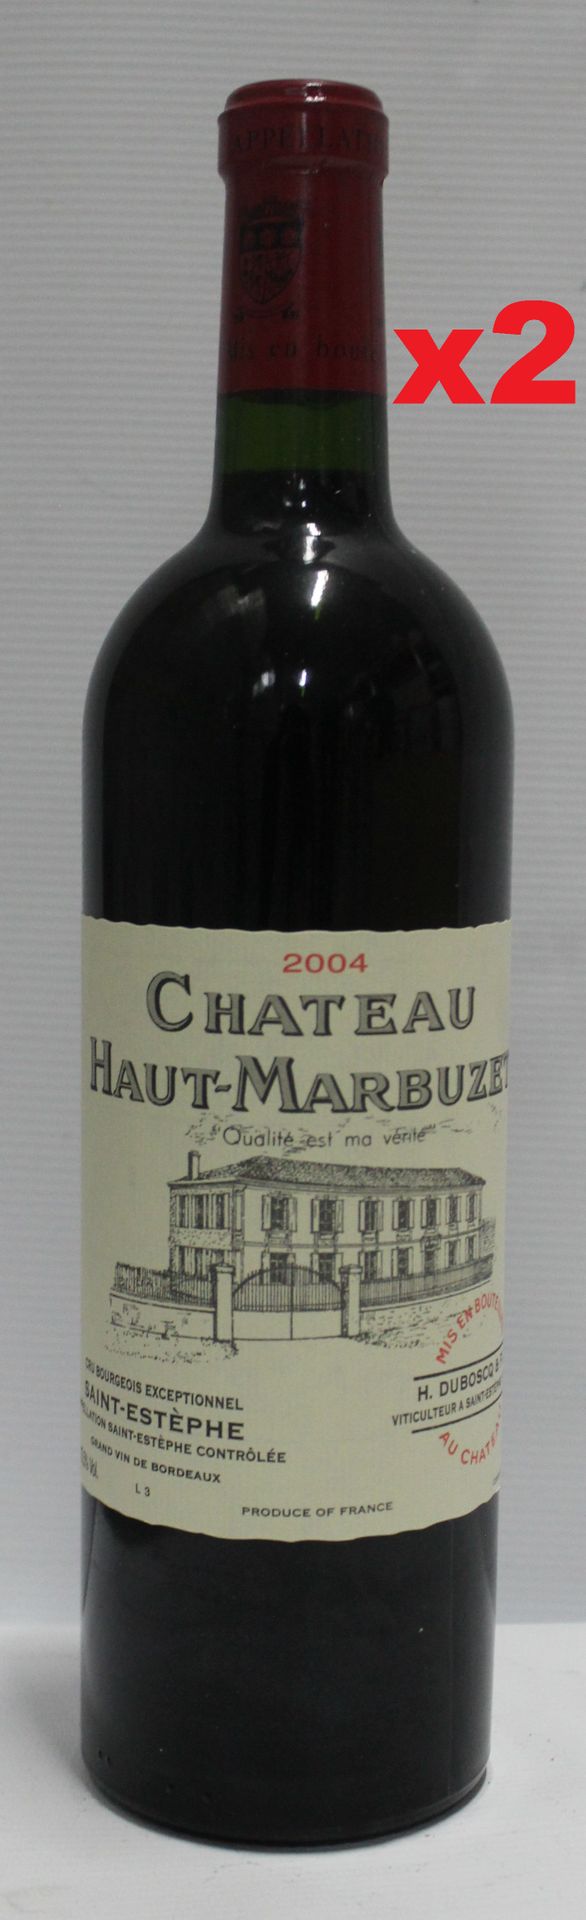 Null 2瓶75cl - 圣埃斯泰夫 - 豪特-马布泽酒庄 - 2004年红葡萄酒

瓶子完美地保存在理想的温度下。